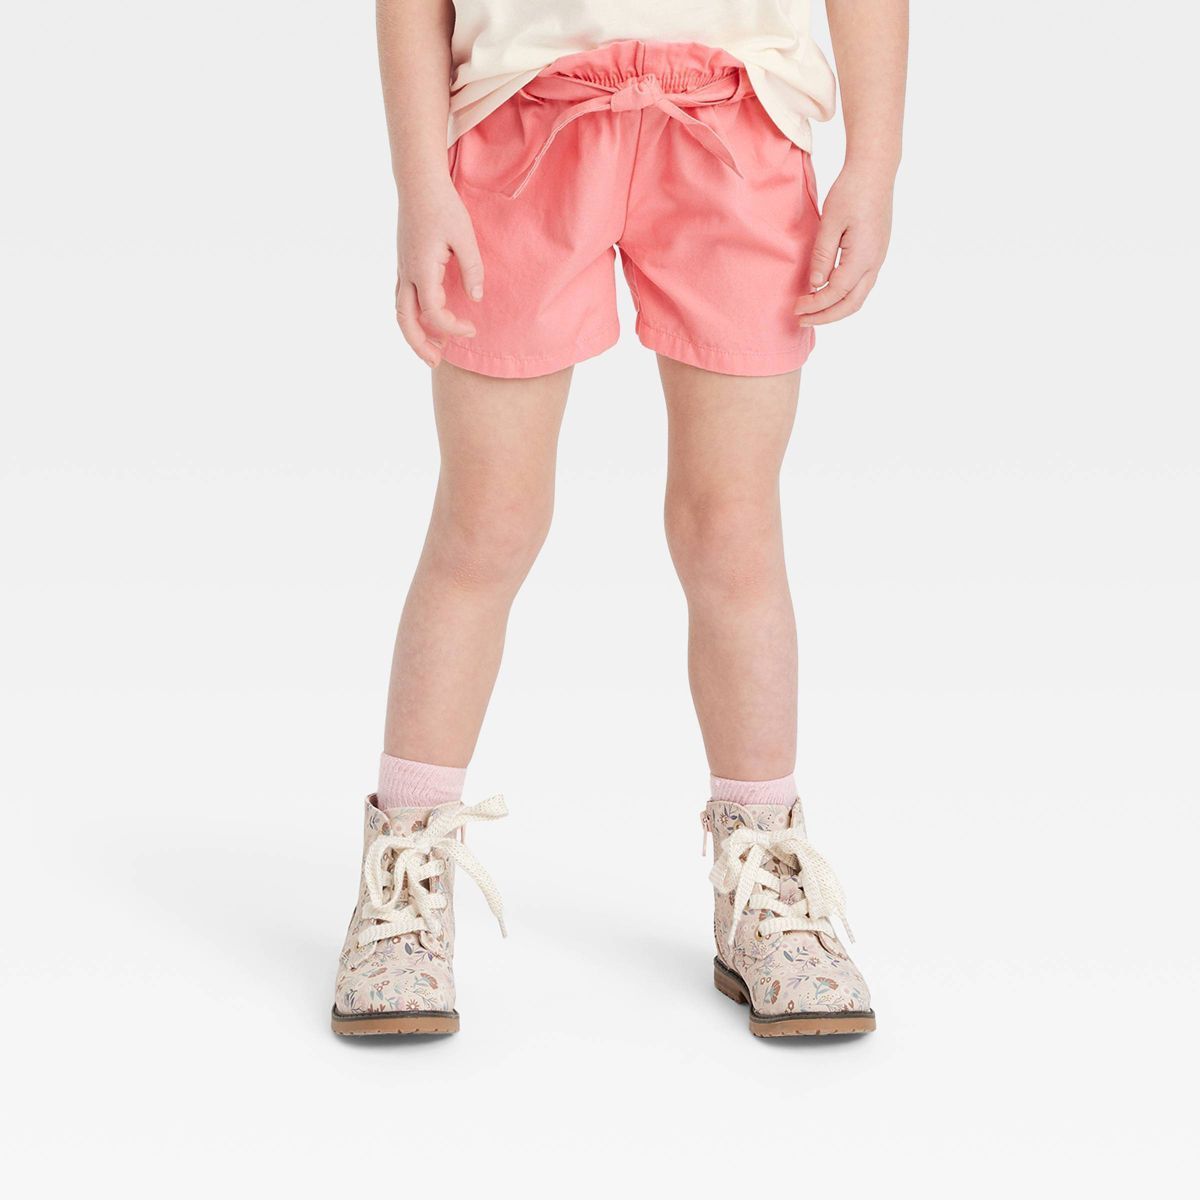 OshKosh B'gosh Toddler Girls' Paper Bag Pull-On Shorts - Coral Pink | Target